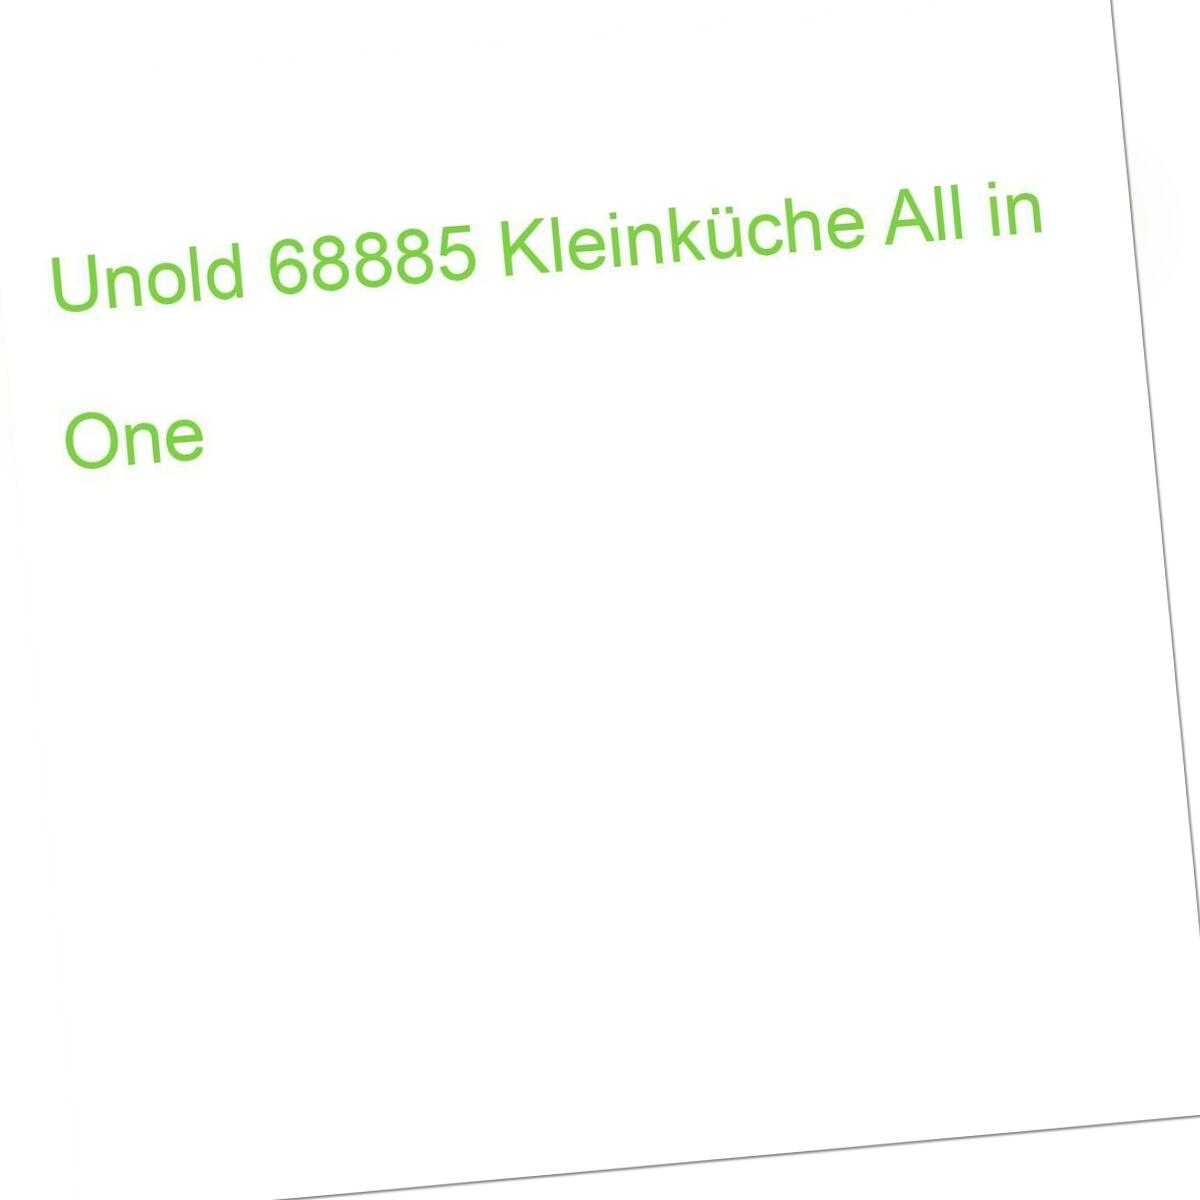 68885 One (4011689688850) Kleinküche UNOLD All in